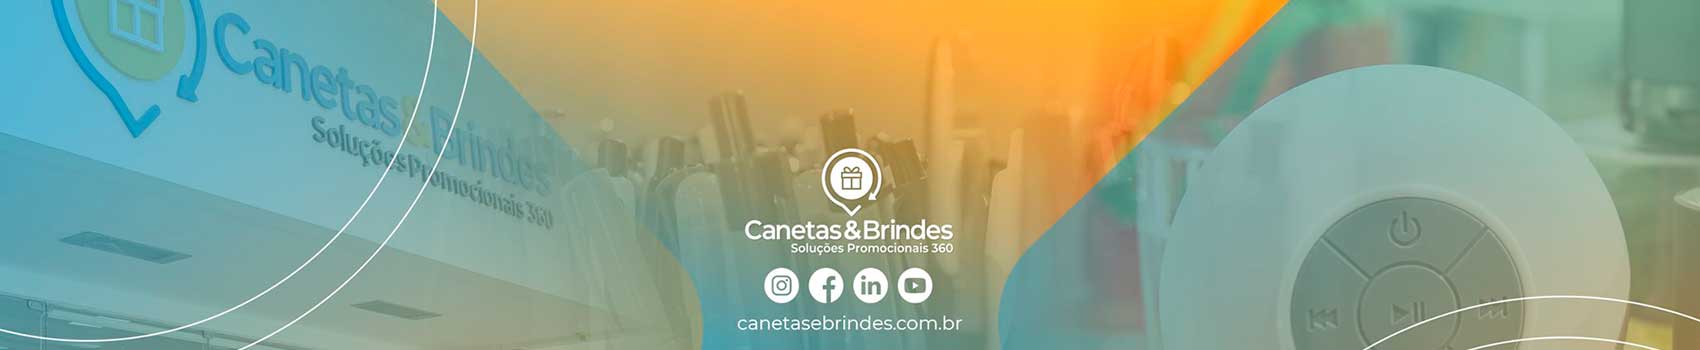 Canetas & Brindes 360